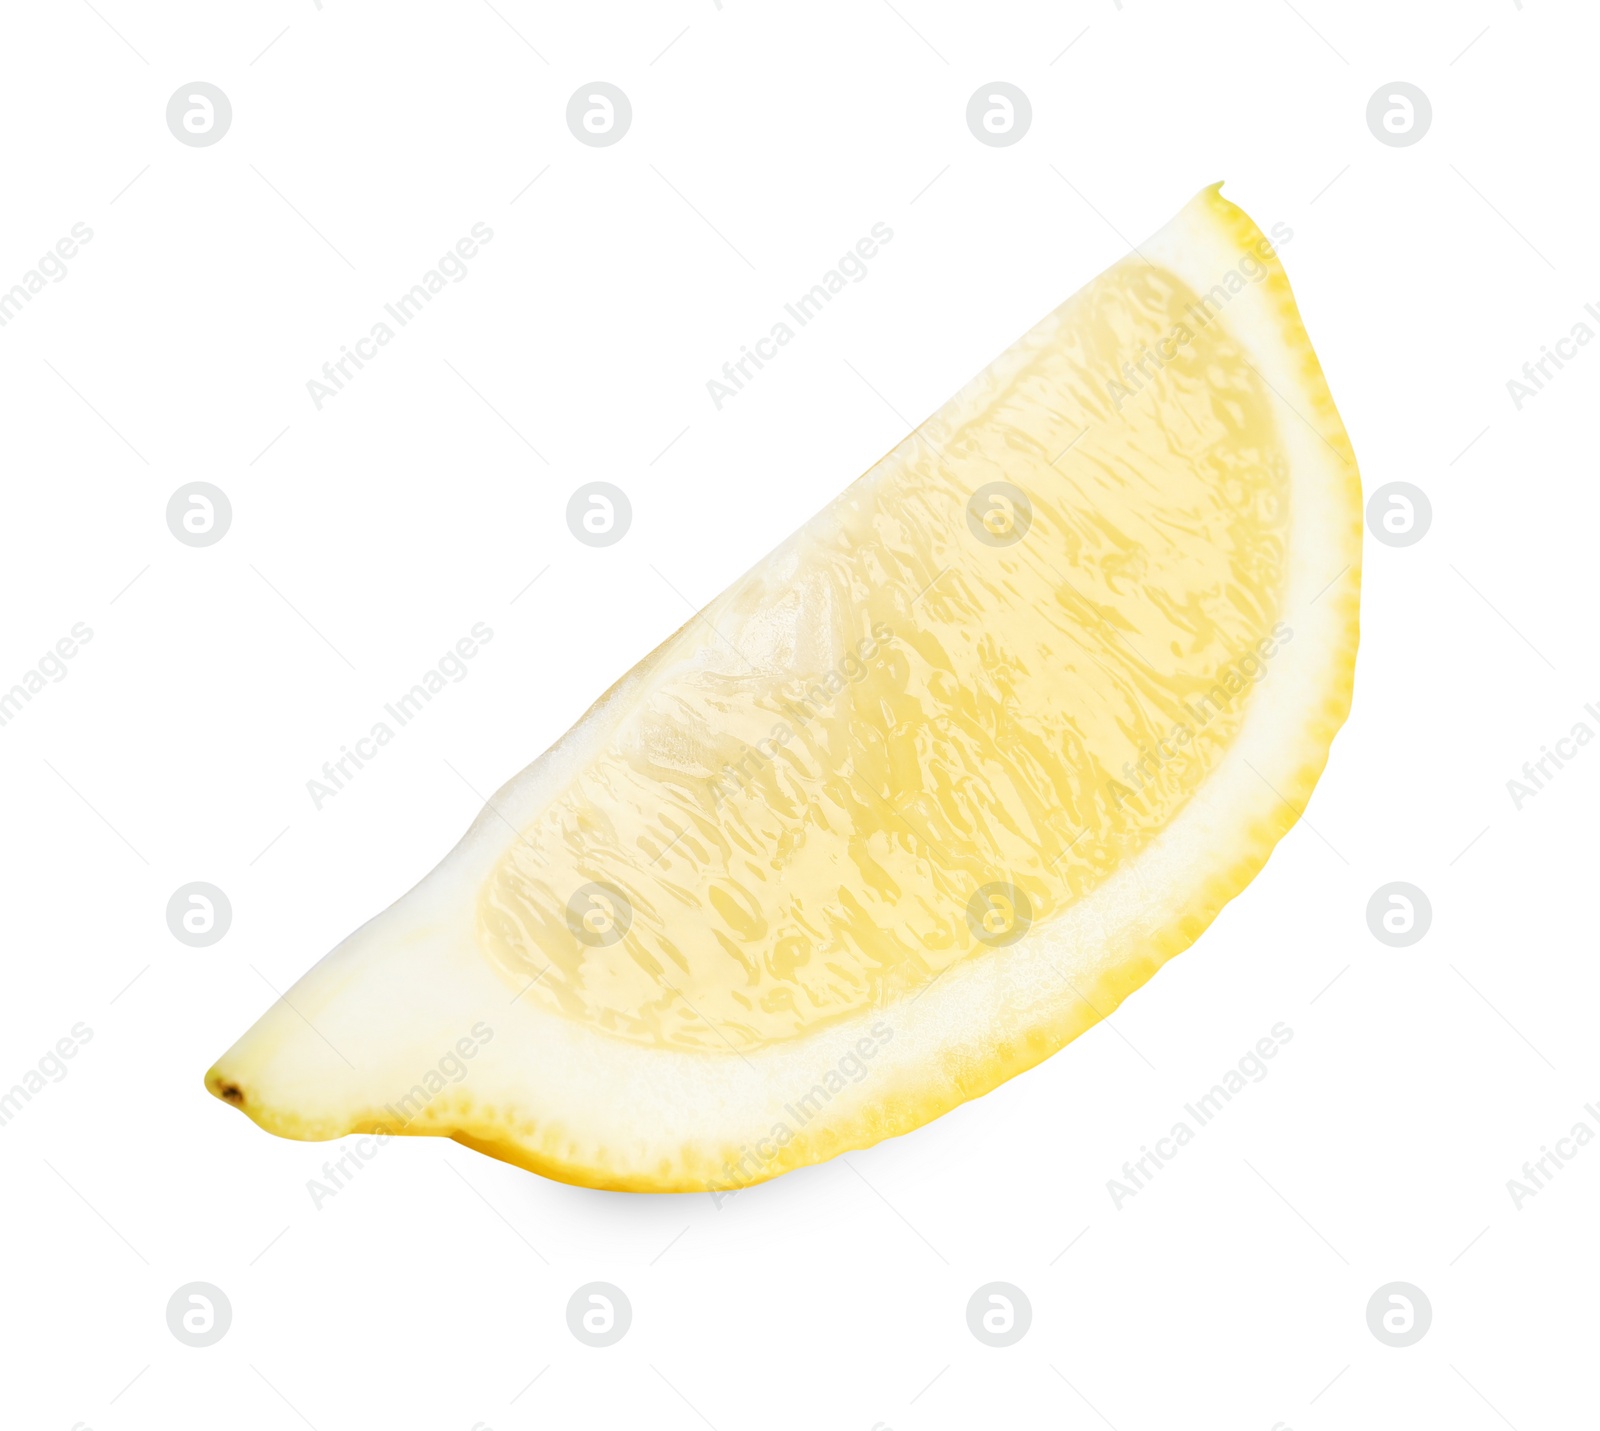 Photo of Citrus fruit. Slice of fresh lemon isolated on white